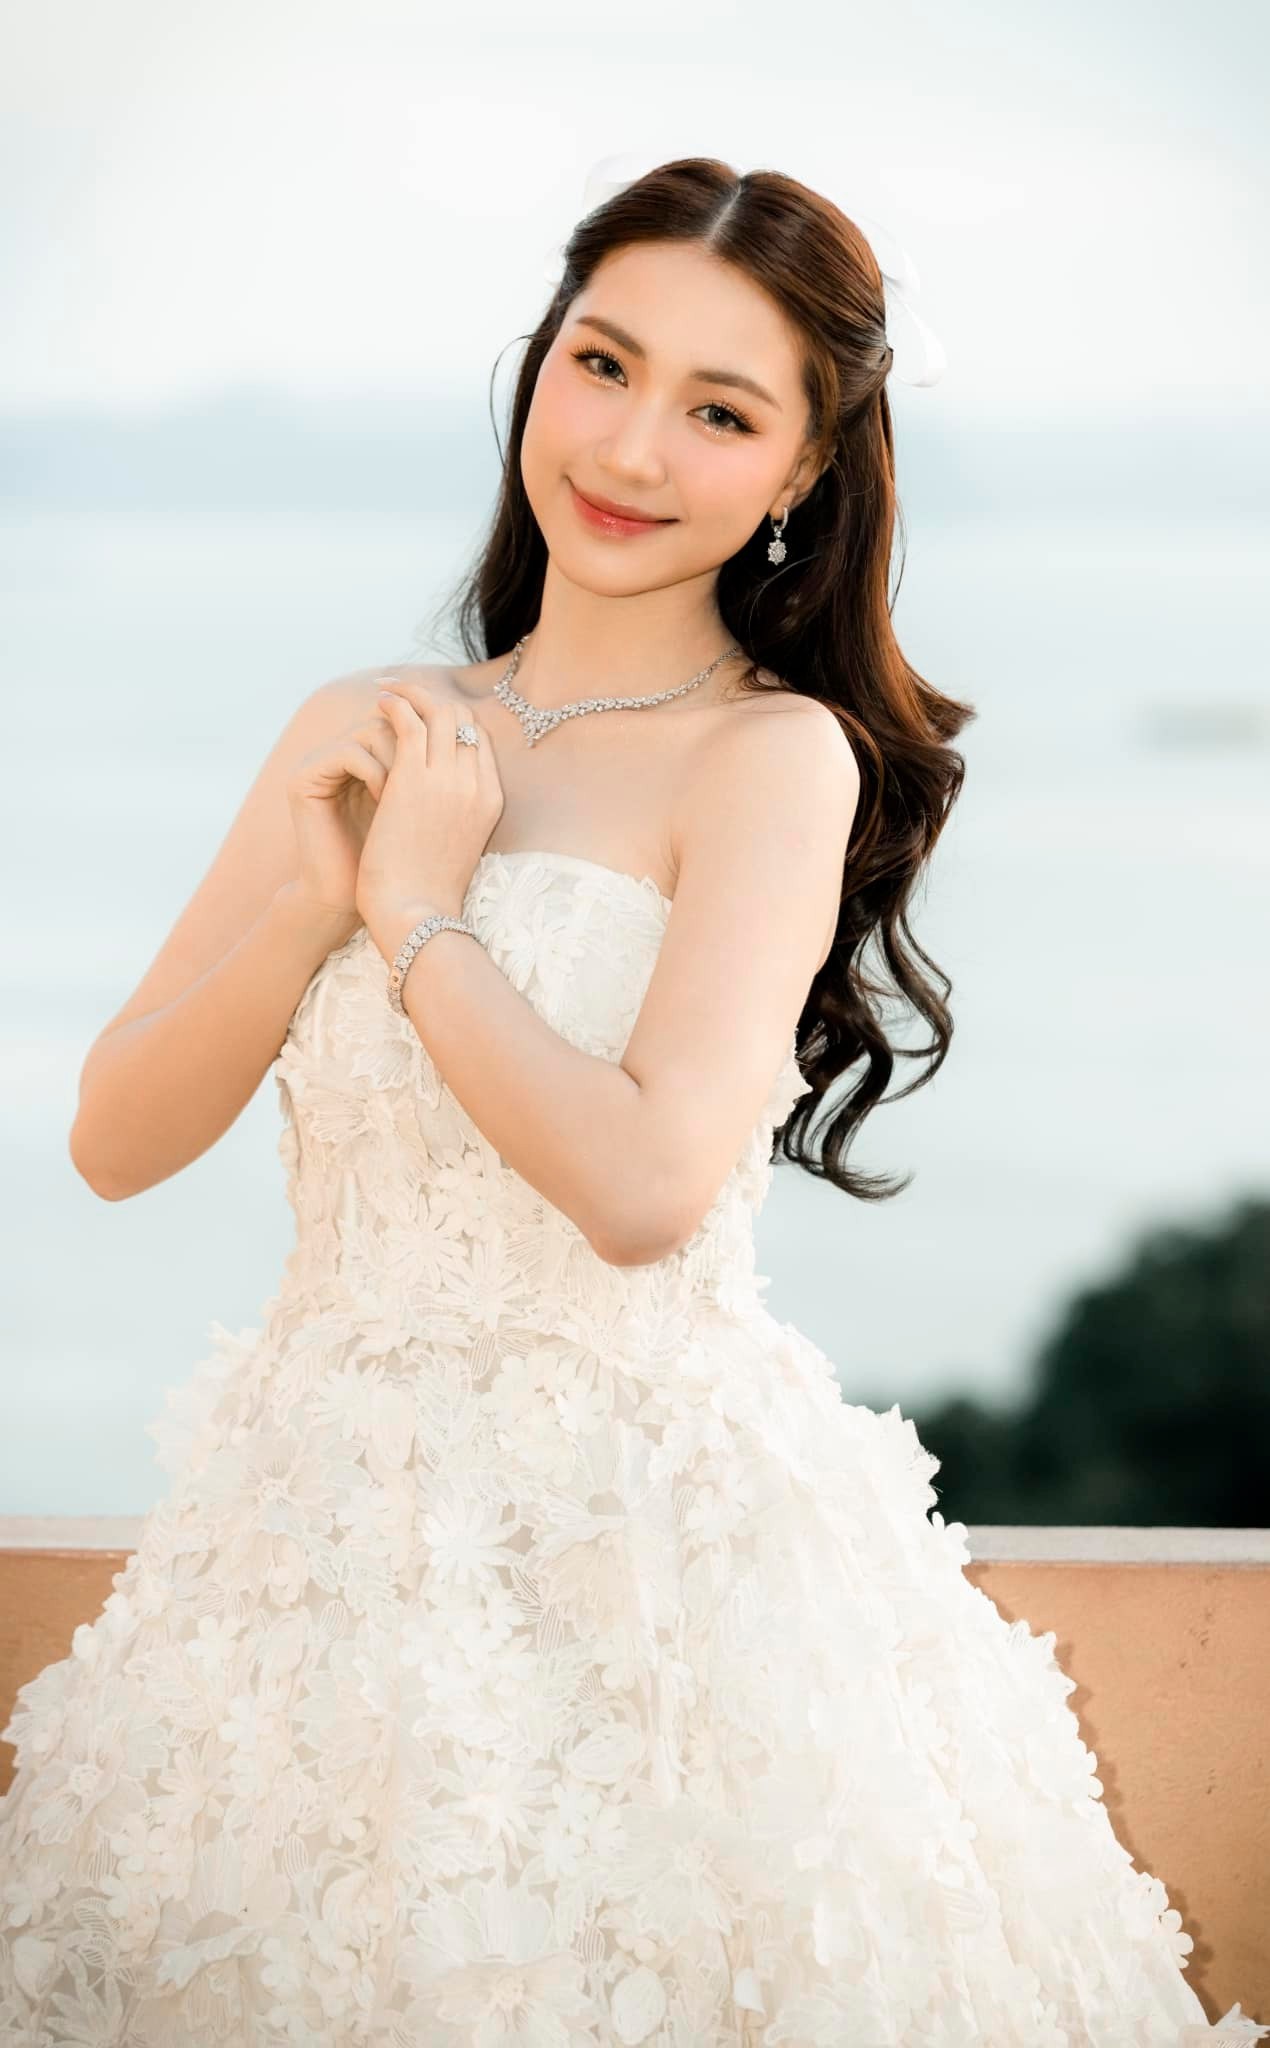 Trực tiếp đám cưới Duy Mạnh - Quỳnh Anh: Cô dâu mặc váy cưới lộng lẫy xuất  hiện, chờ chú rể tới đón